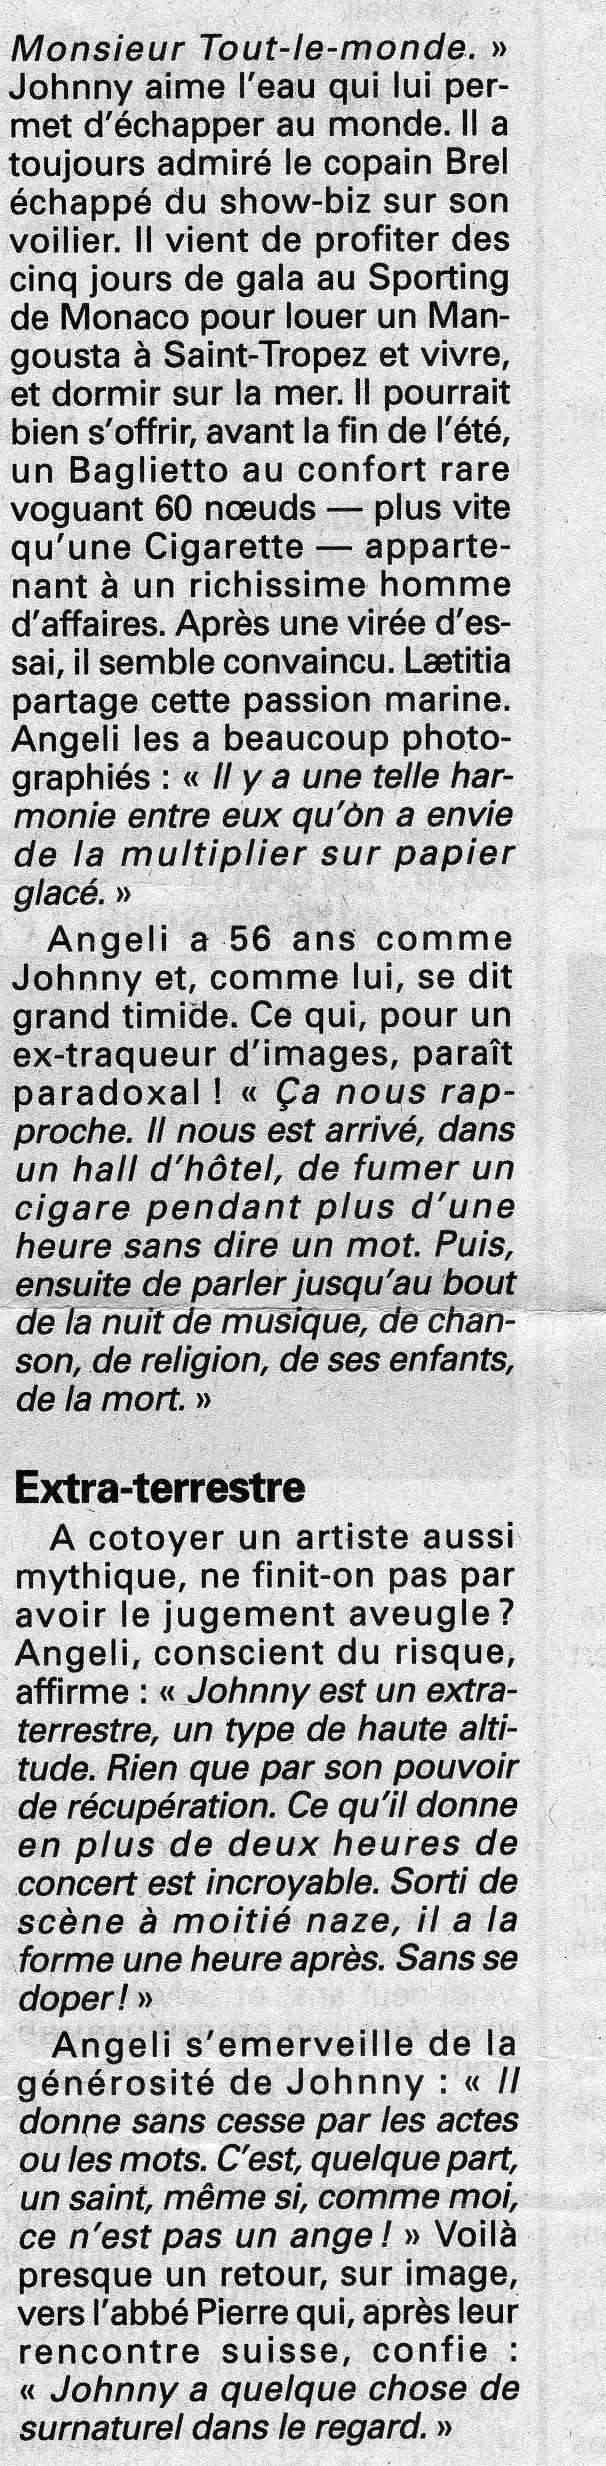 1998 johnny l'annee sous tous les feux - Page 3 Img20113